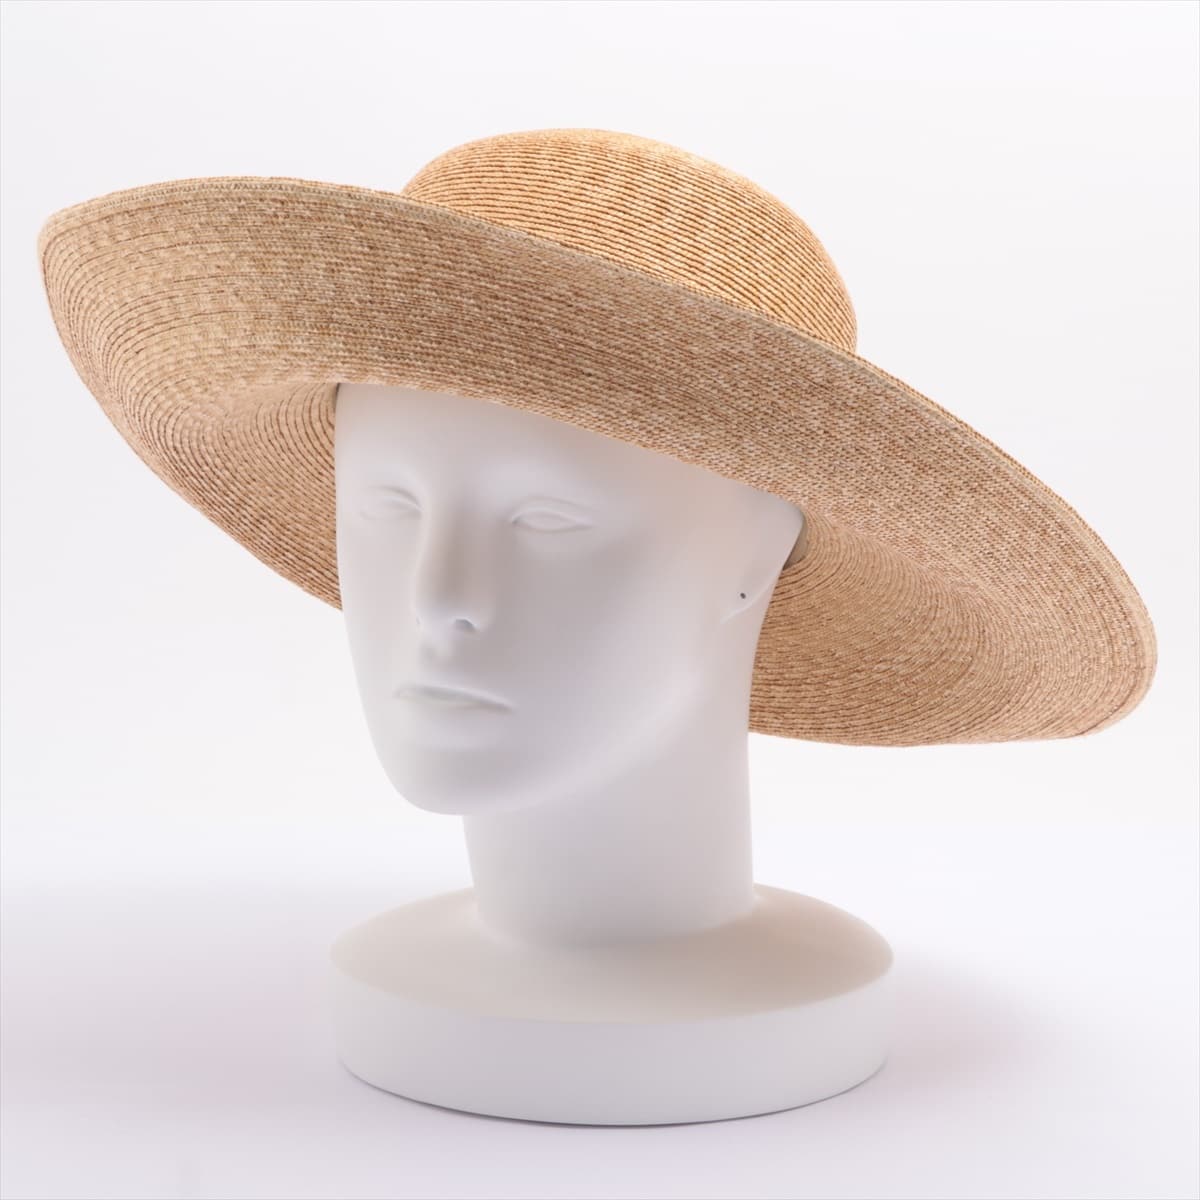 Hermès Hat straw Beige Straw hat Straw hat